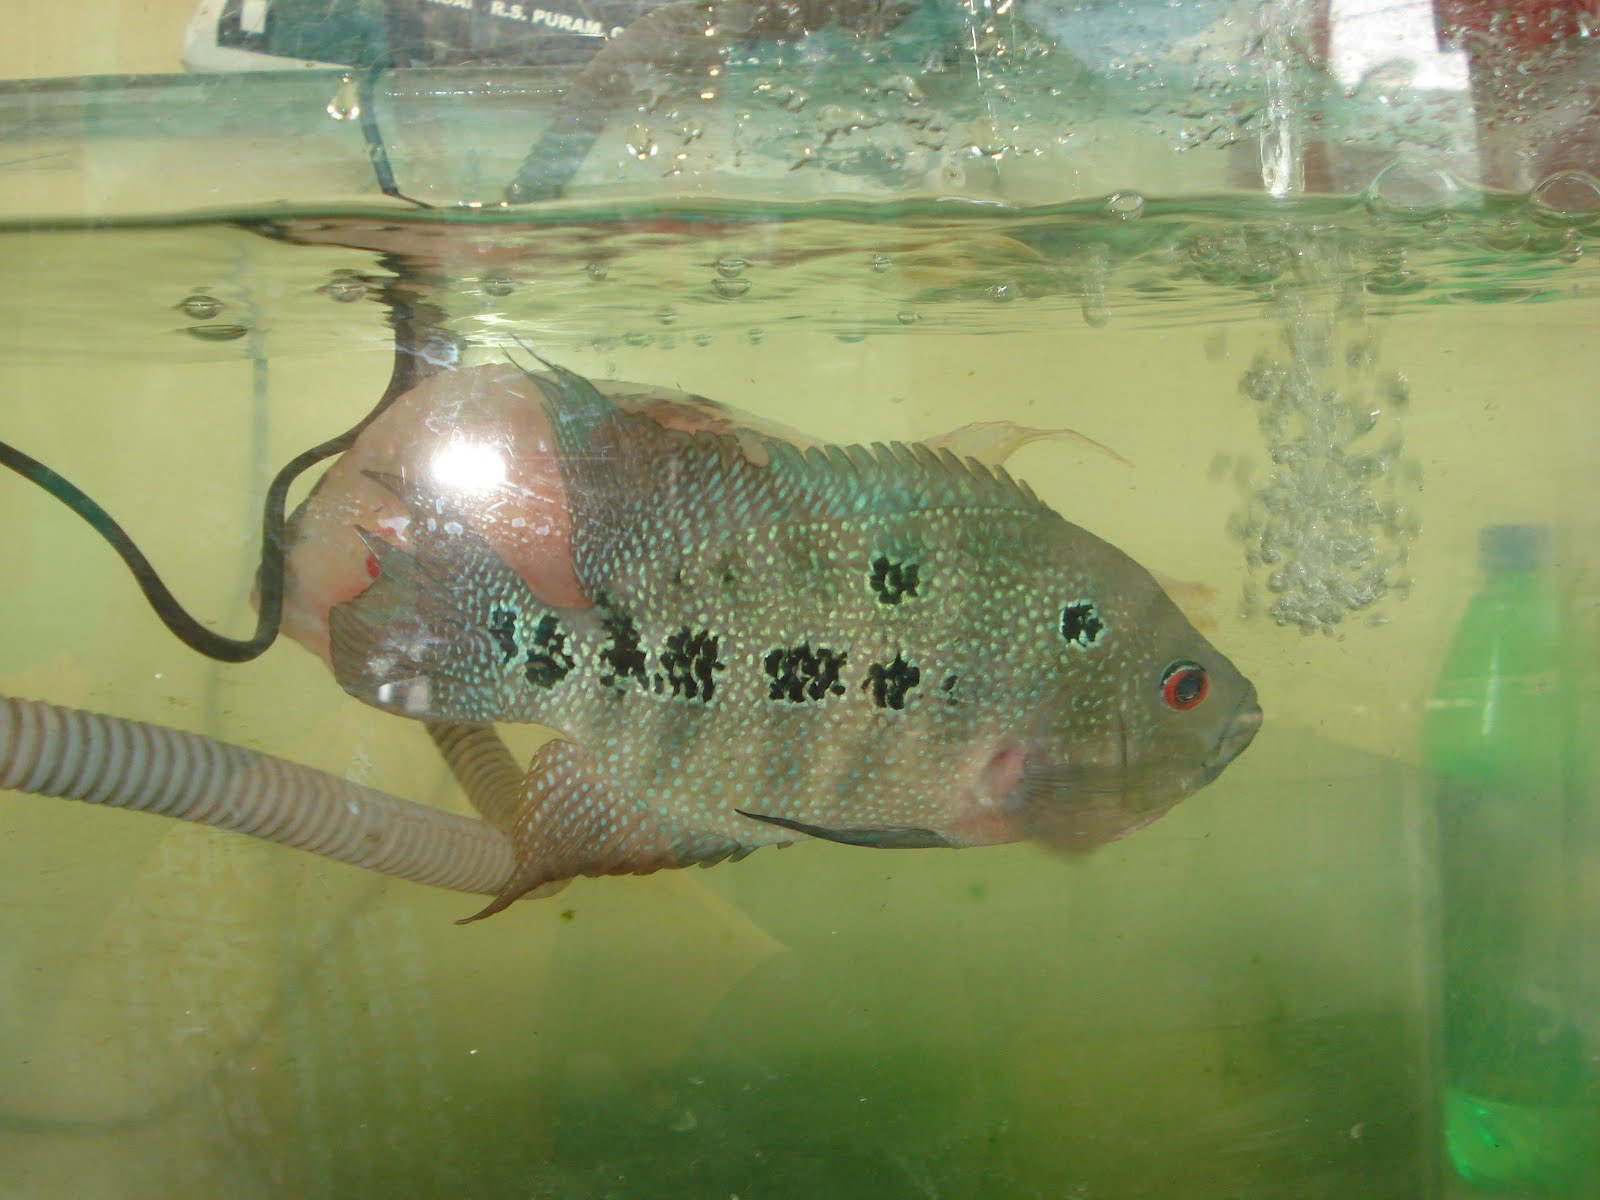 All about betta fish: breeding flowerhorn